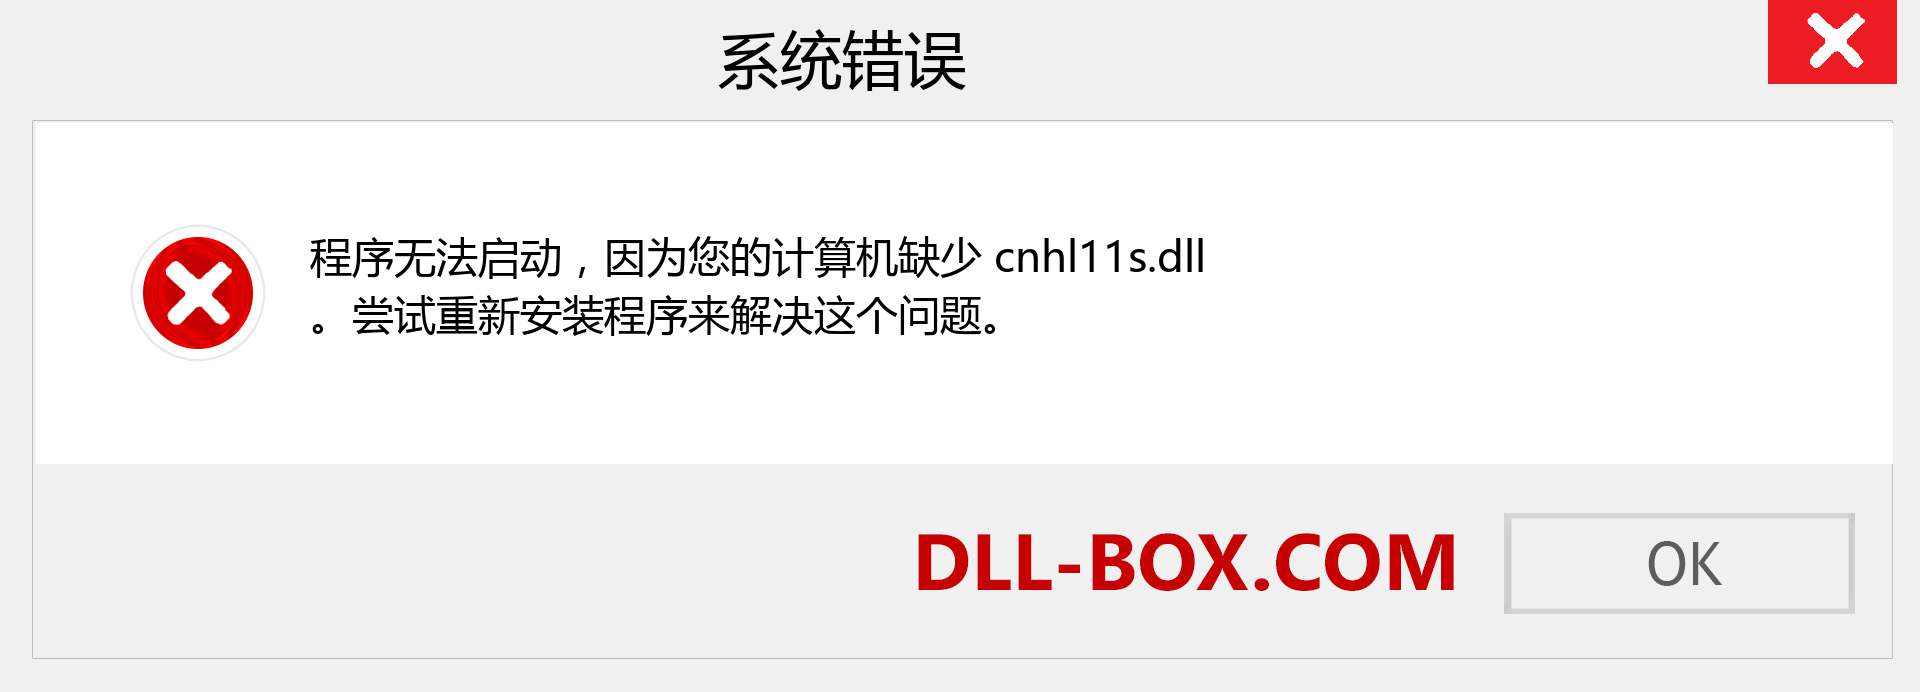 cnhl11s.dll 文件丢失？。 适用于 Windows 7、8、10 的下载 - 修复 Windows、照片、图像上的 cnhl11s dll 丢失错误